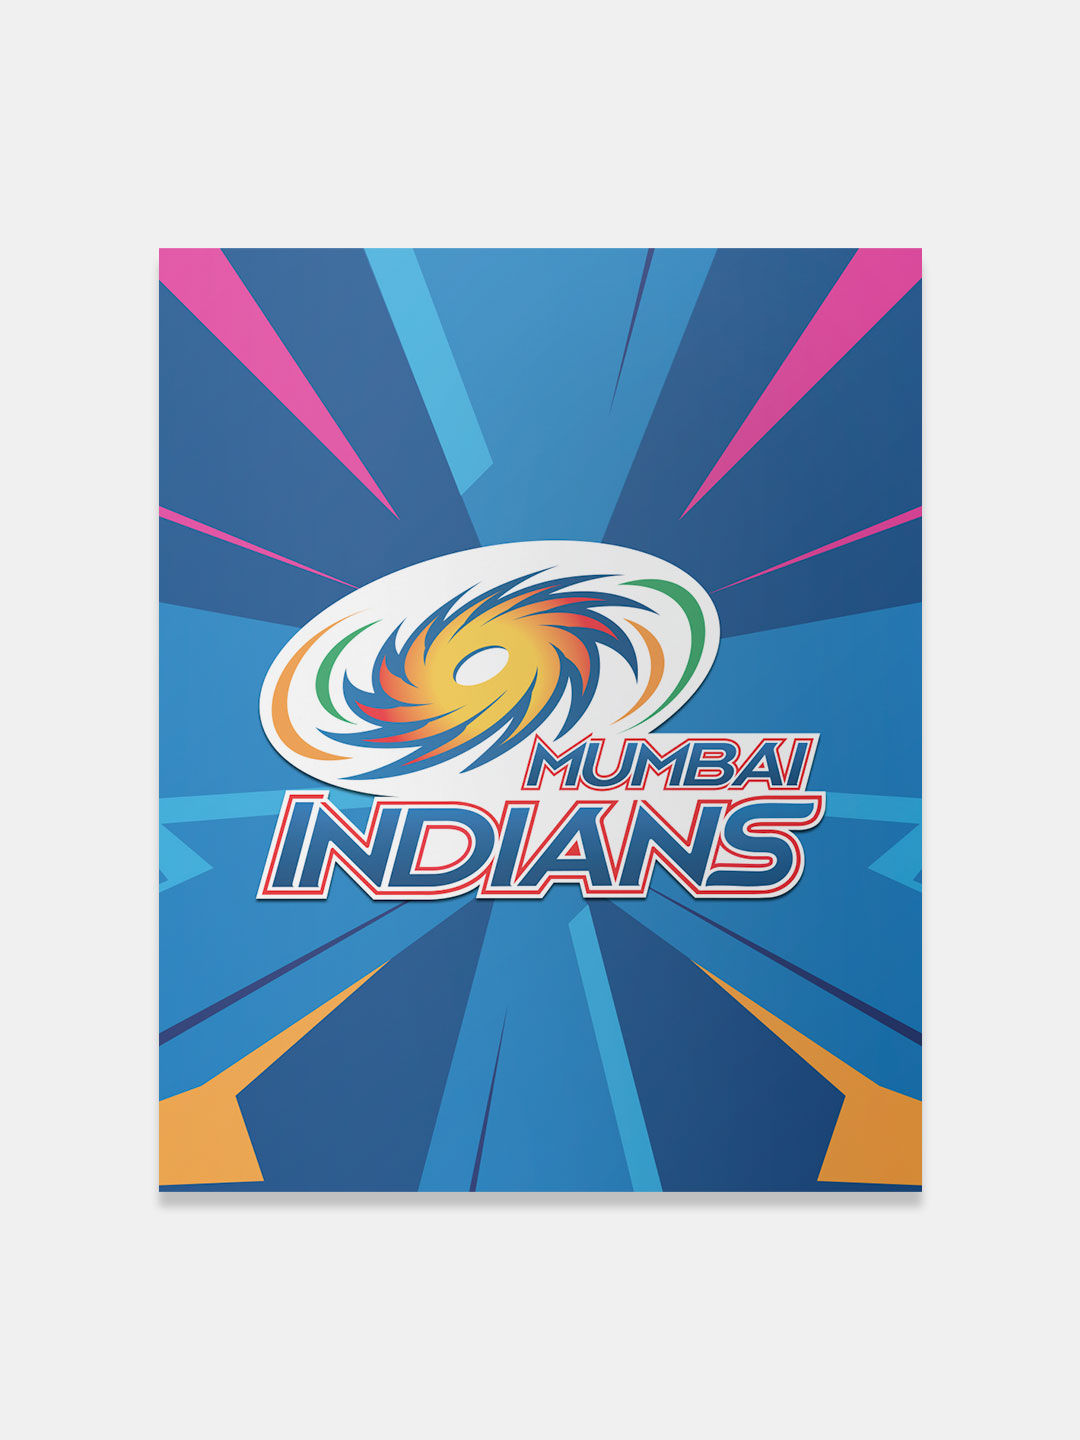 Mumbai Indians Logo Wallpapers - Wallpaper Cave